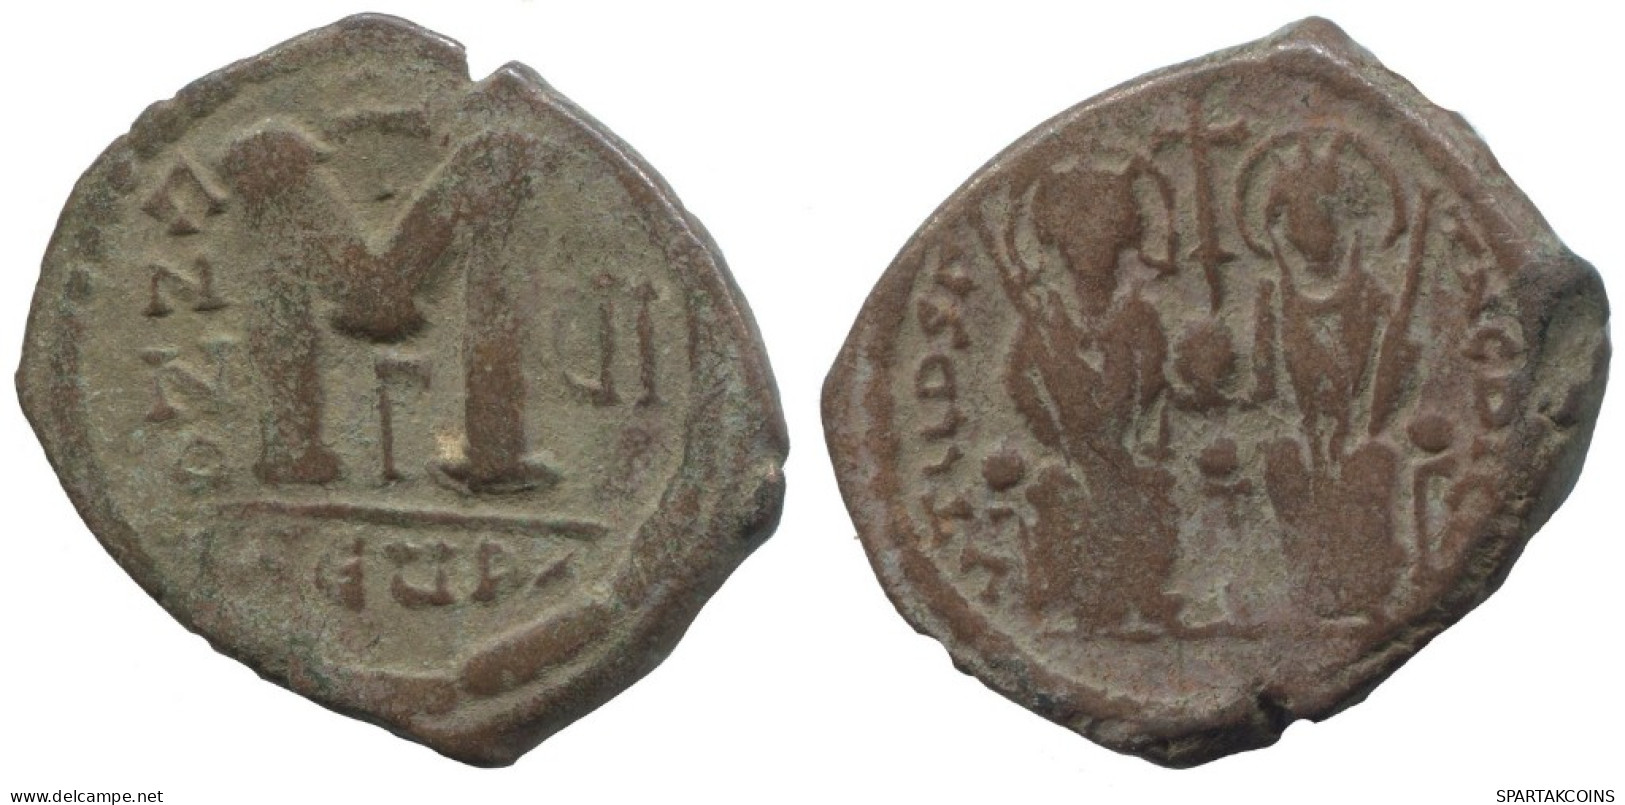 FLAVIUS JUSTINUS II FOLLIS Antike BYZANTINISCHE Münze  14.4g/34mm #AA487.19.D.A - Byzantinische Münzen